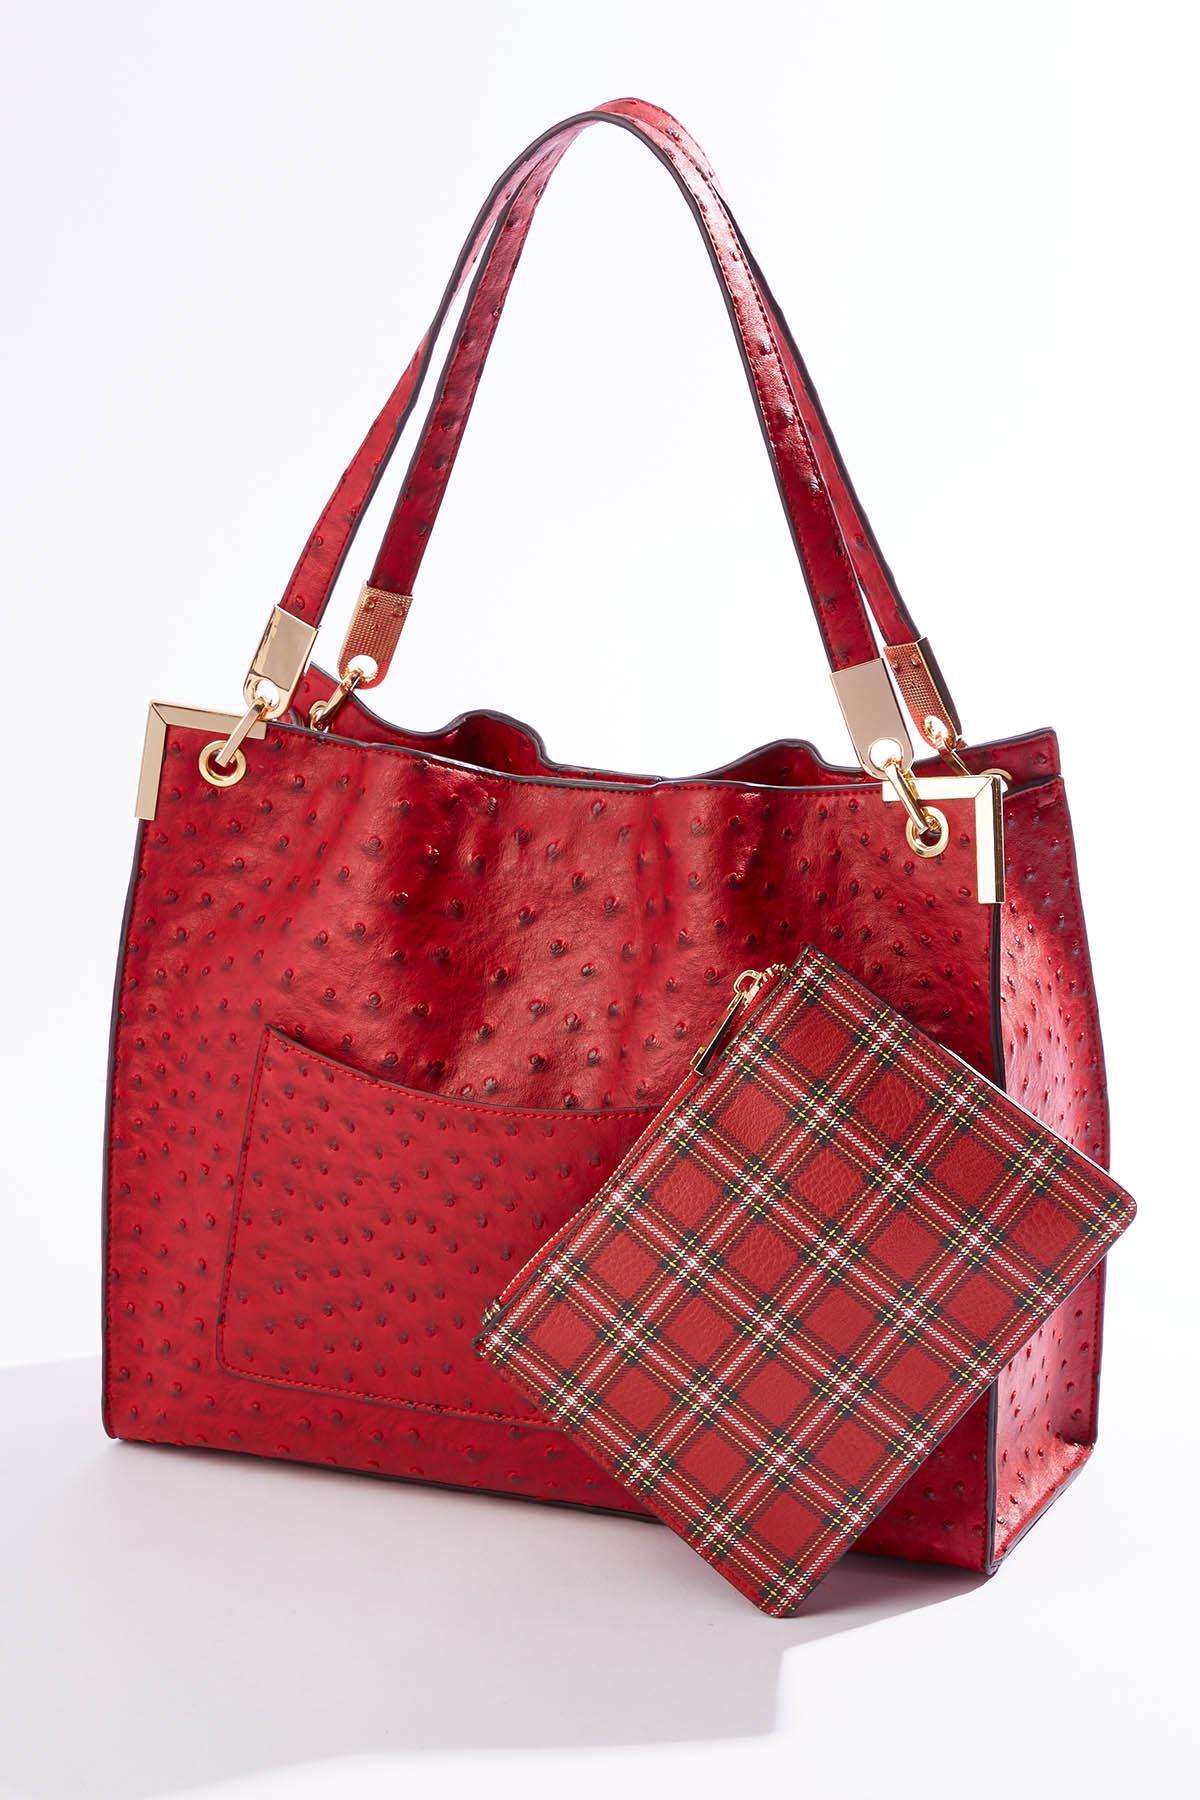 Handbags   Cato Fashions